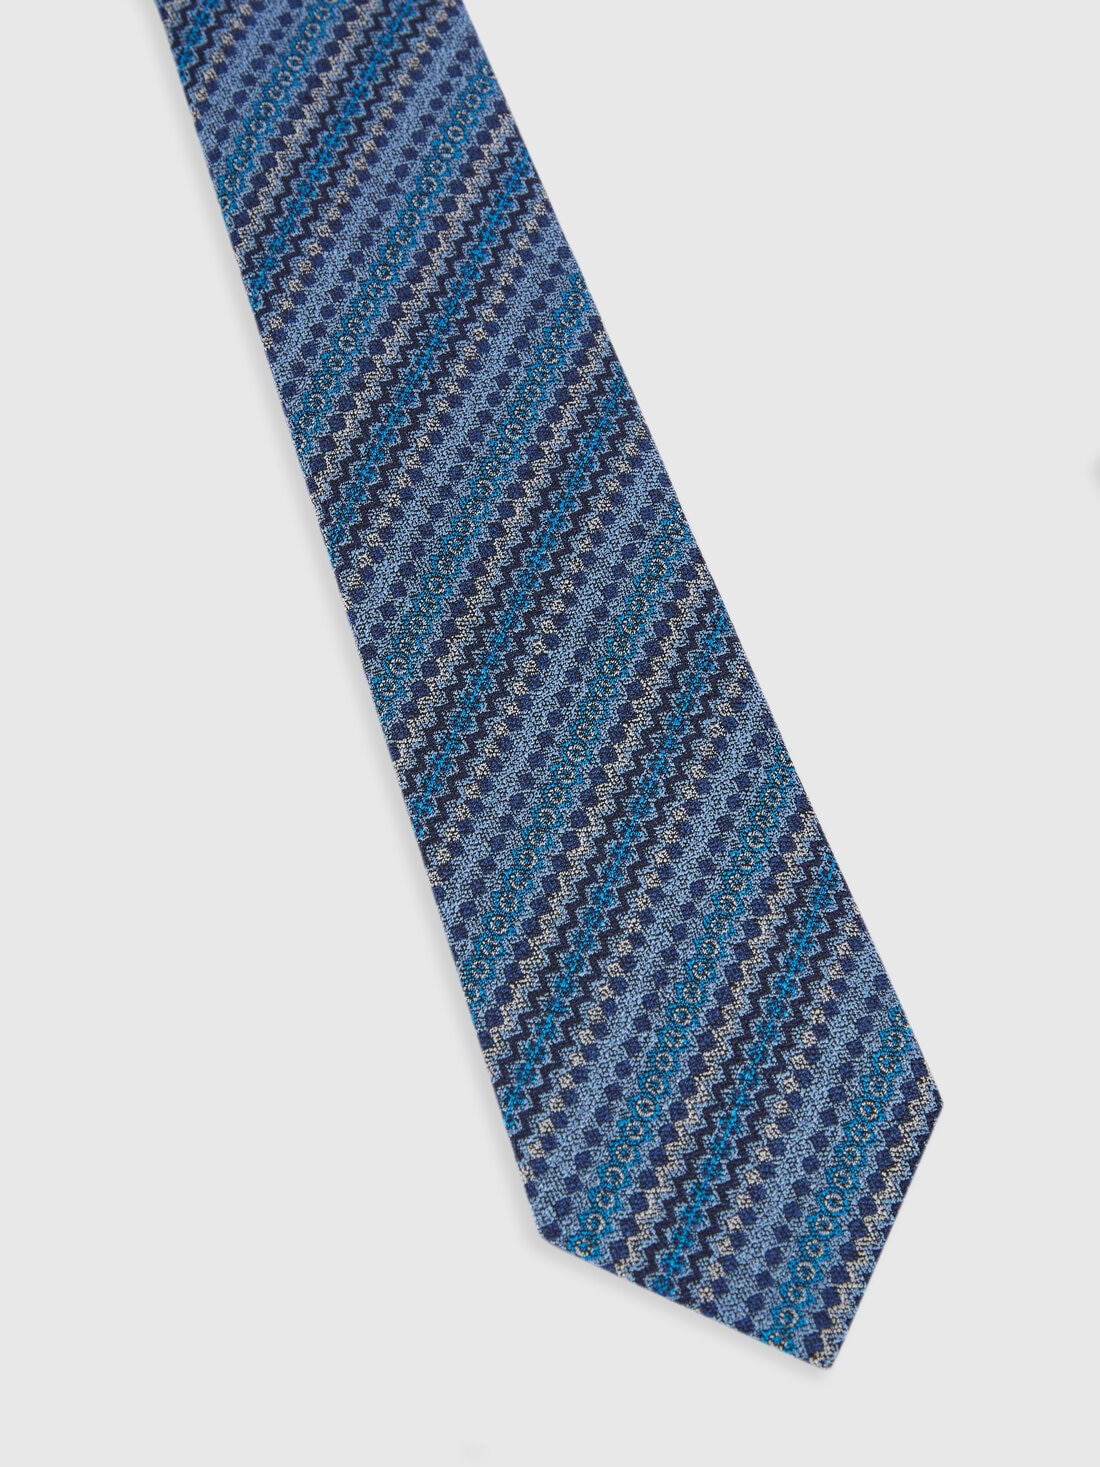 Cravatta in seta multilavorata , Multicolore  - 8053147141893 - 1